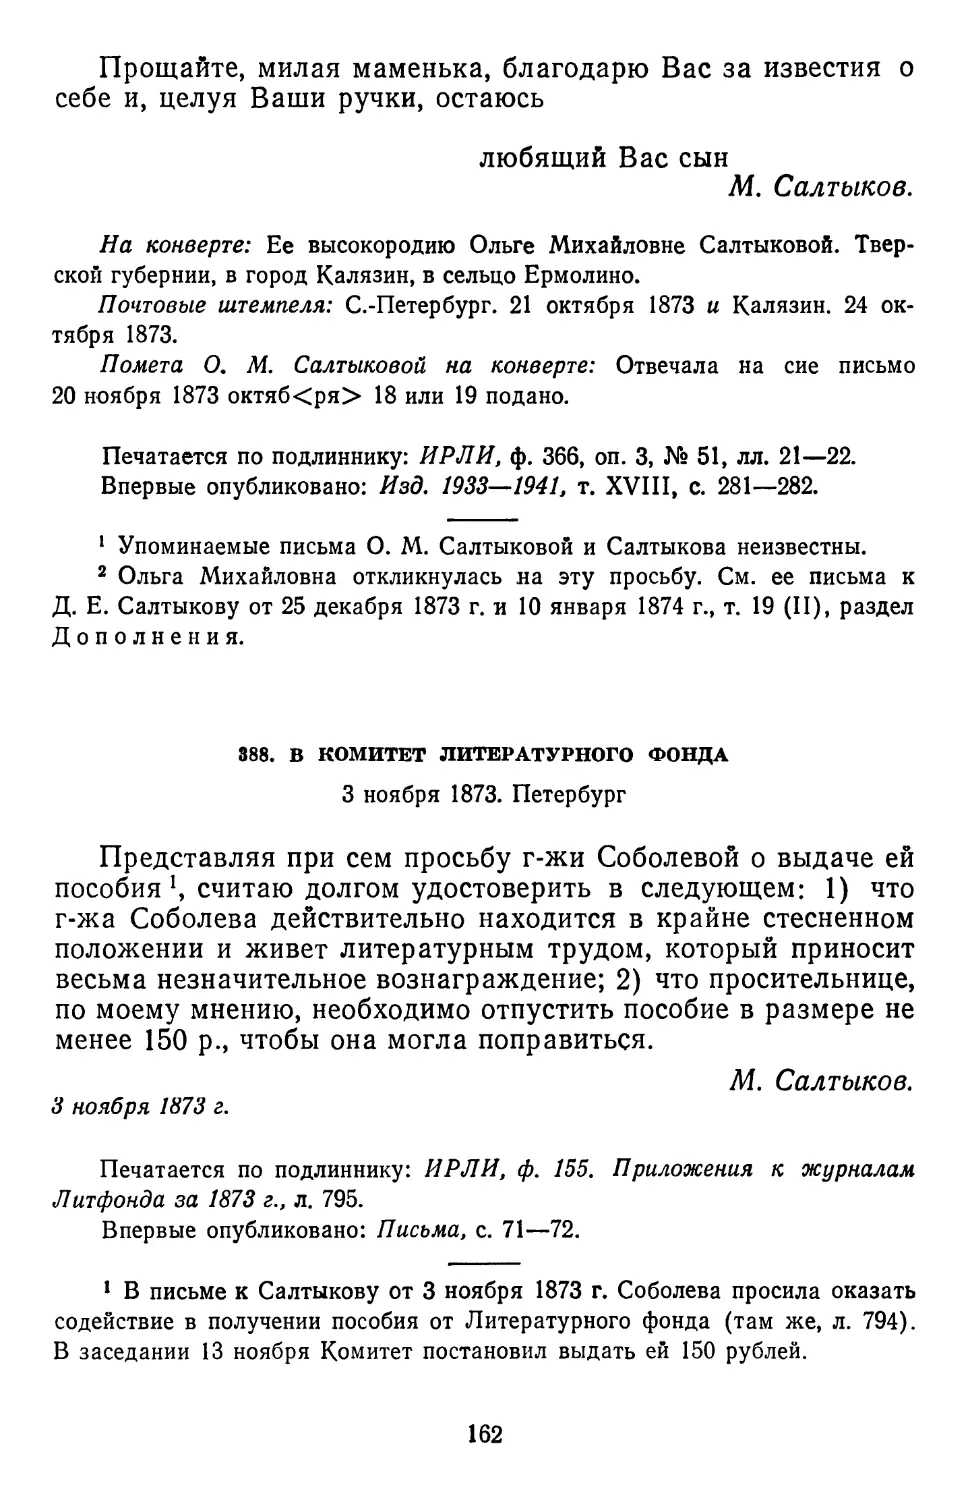 388.ВКомитет Литературного фонда. 3 ноября 1873. Петербург